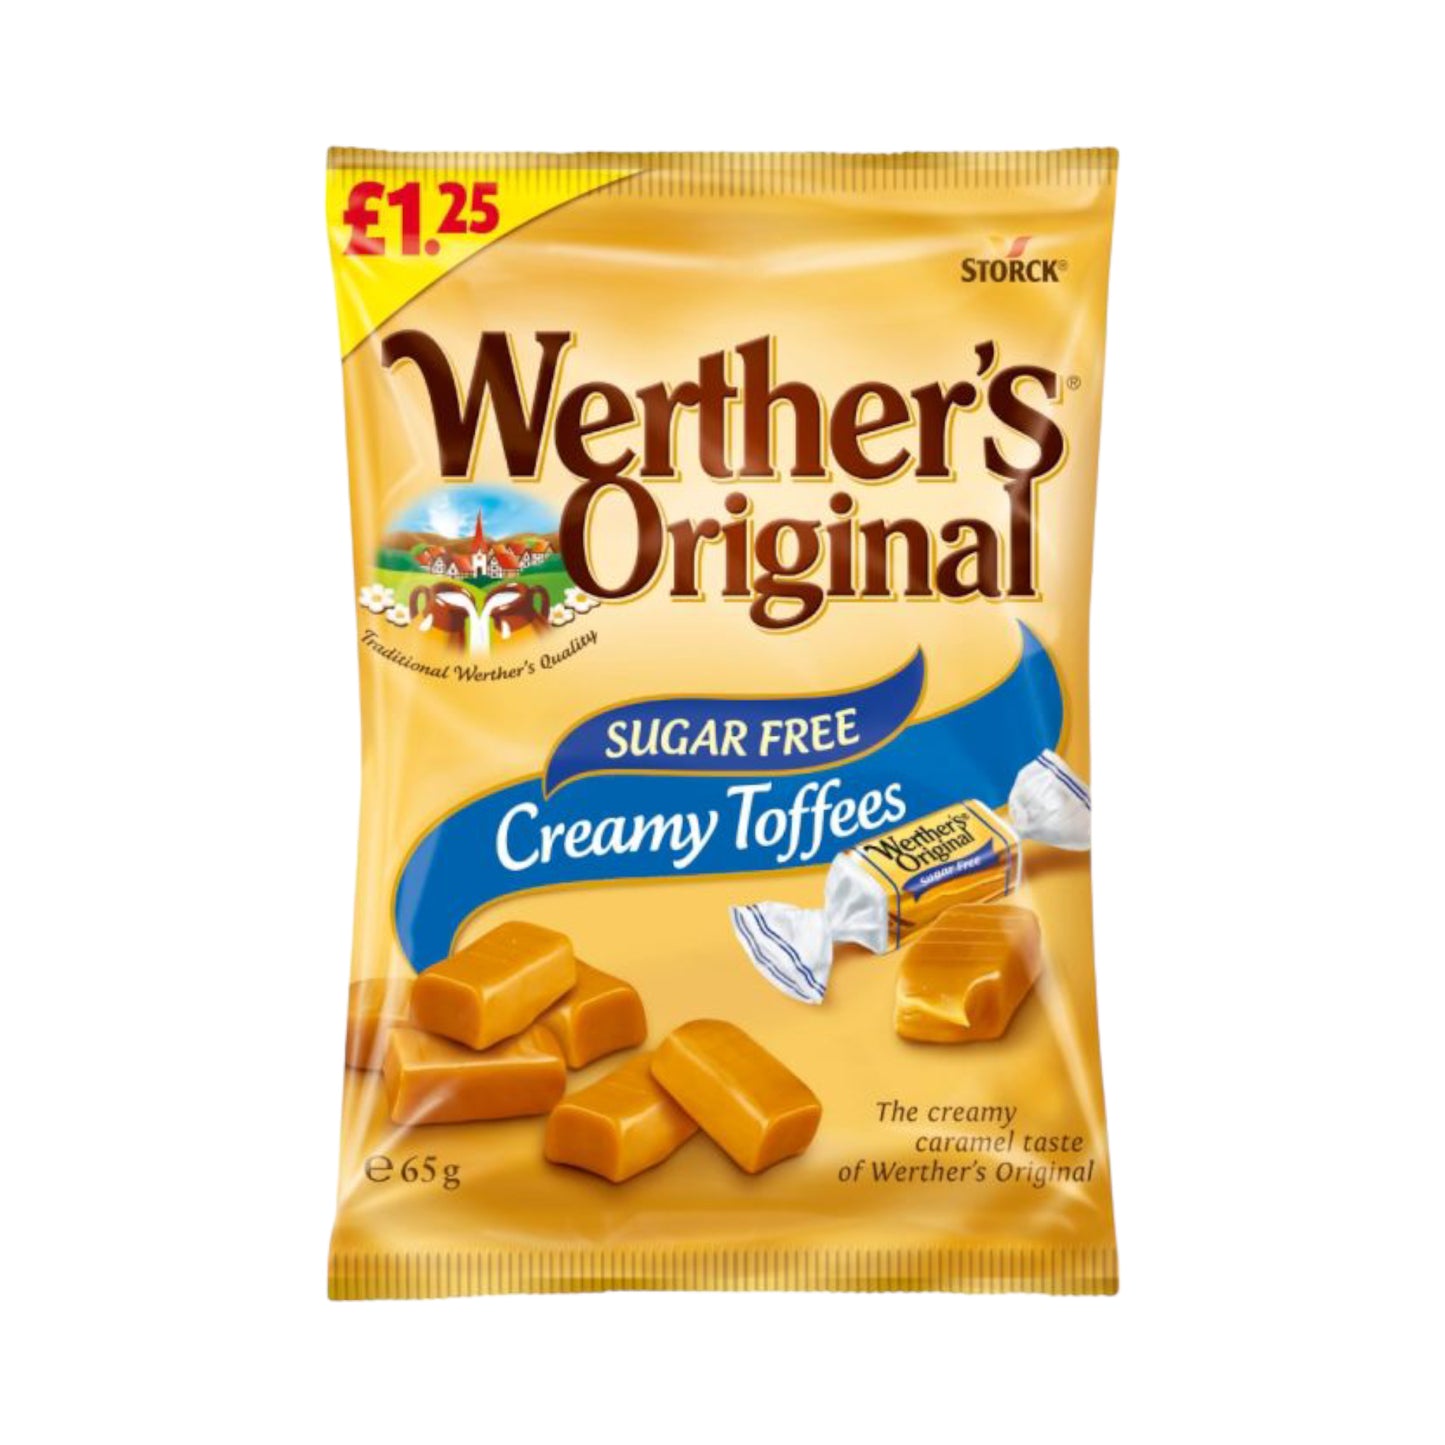 Werther's Original Sugar Free Creamy Toffees - 65g (£1.25 PMP)